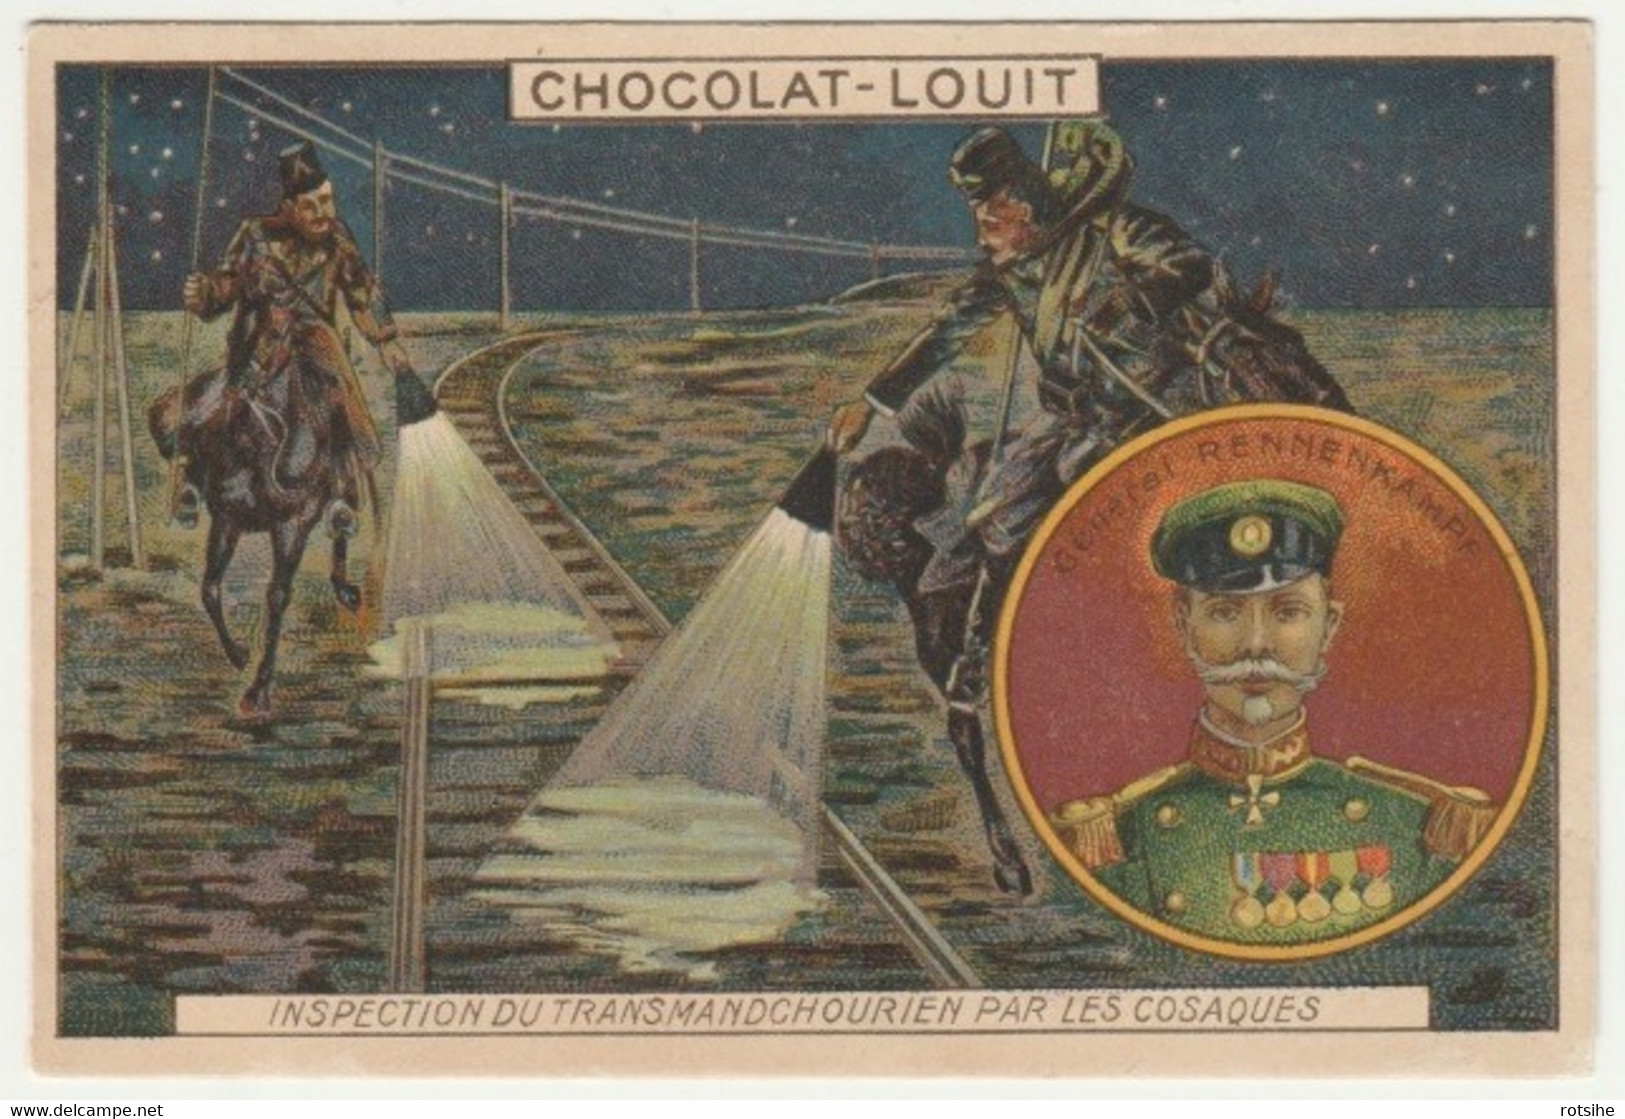 CHROMO Chocolat LOUIT GUERRE RUSSO JAPONAIS GENERAL RENNEKAMPF TRAIN CHEMIN FER TRANSMANDCHOURIEN COSAQUES RUSSIE - Louit